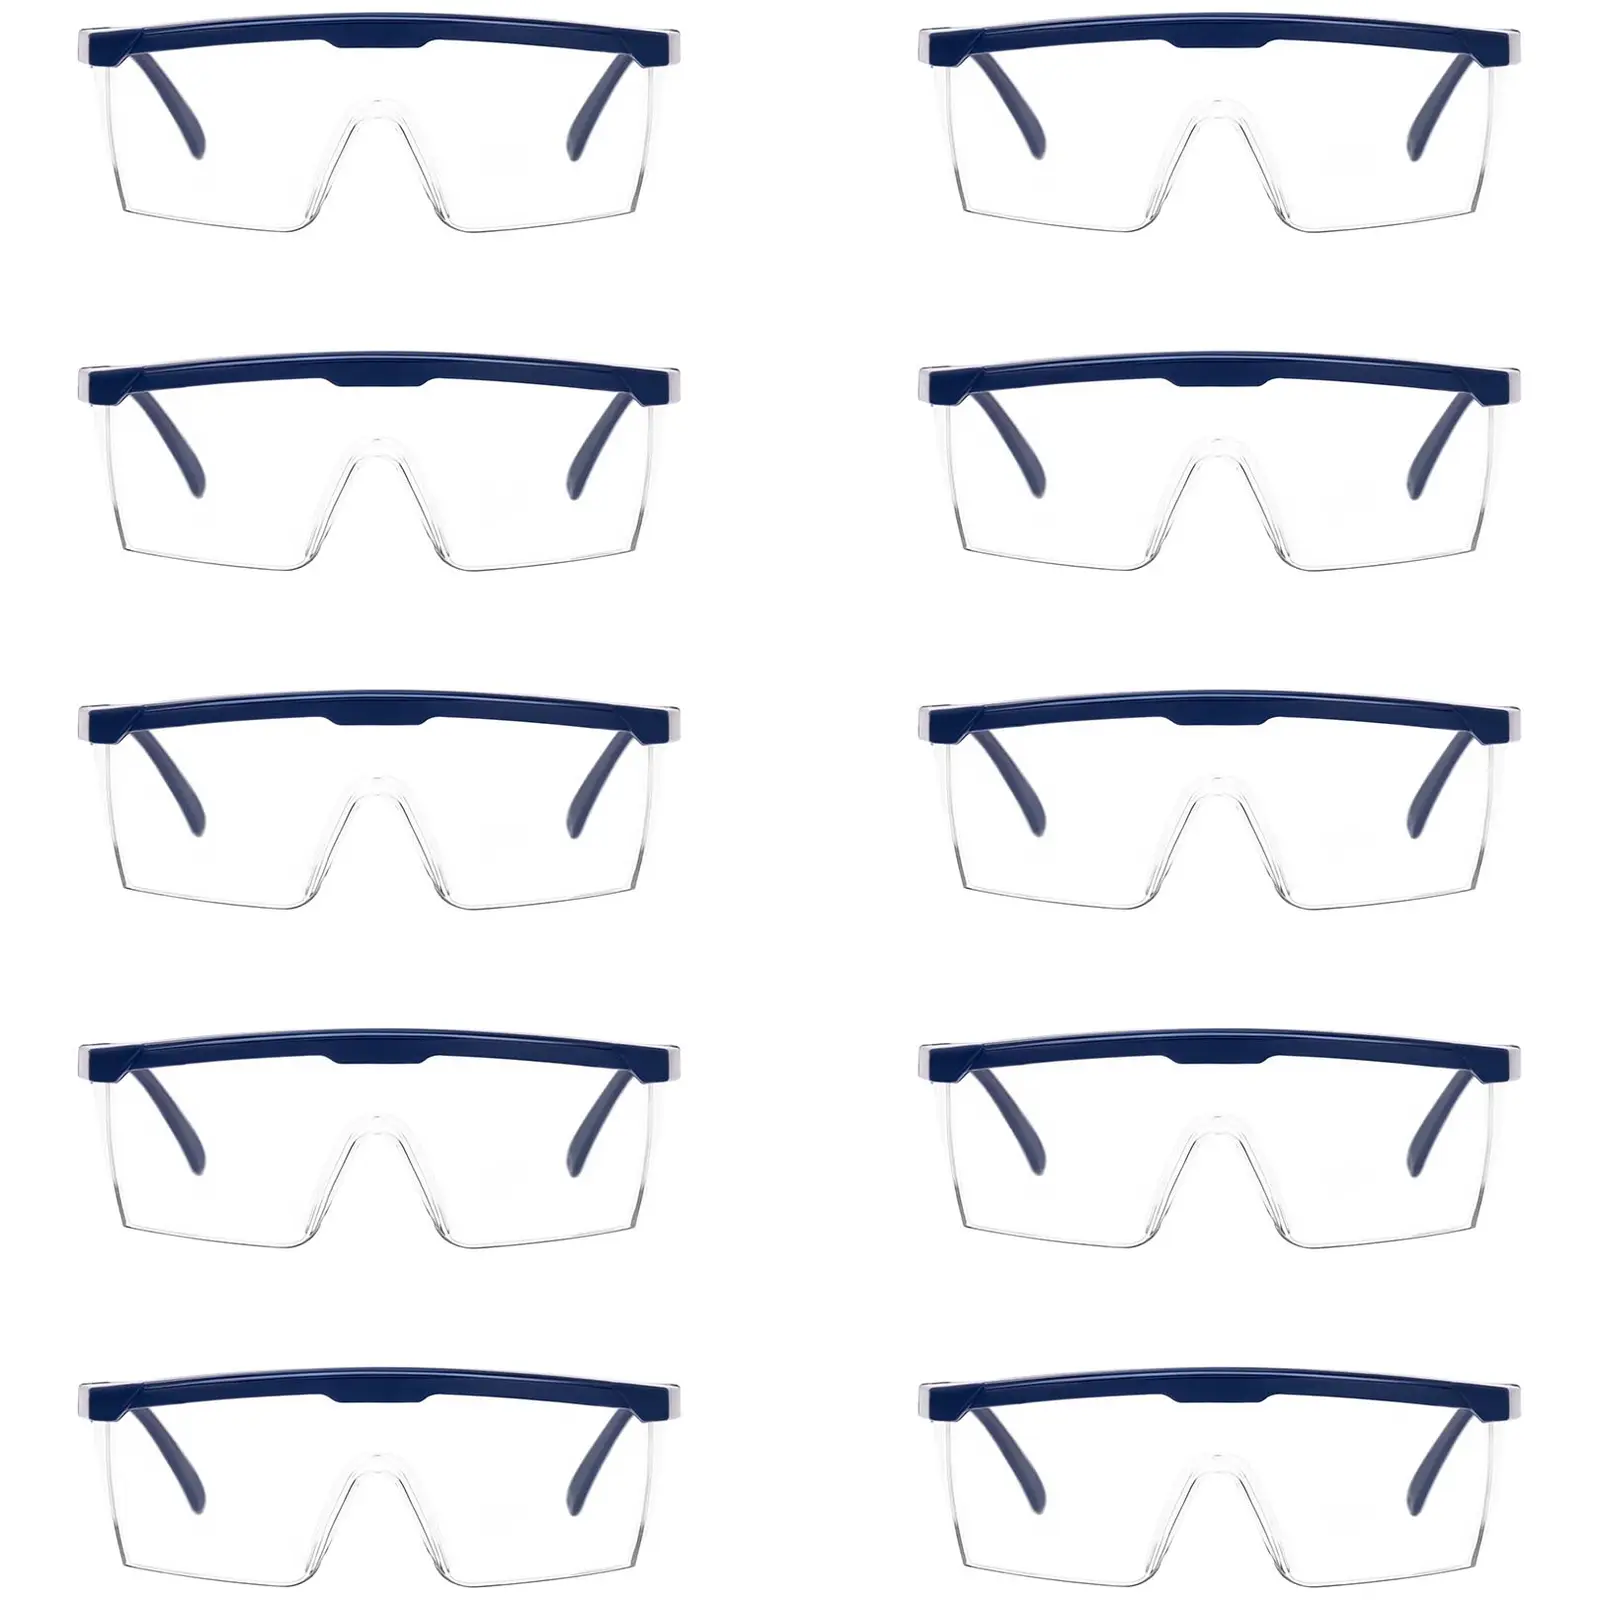 TECTOR Schutzbrille - klar - EN166 - verstellbar - 10 Stück